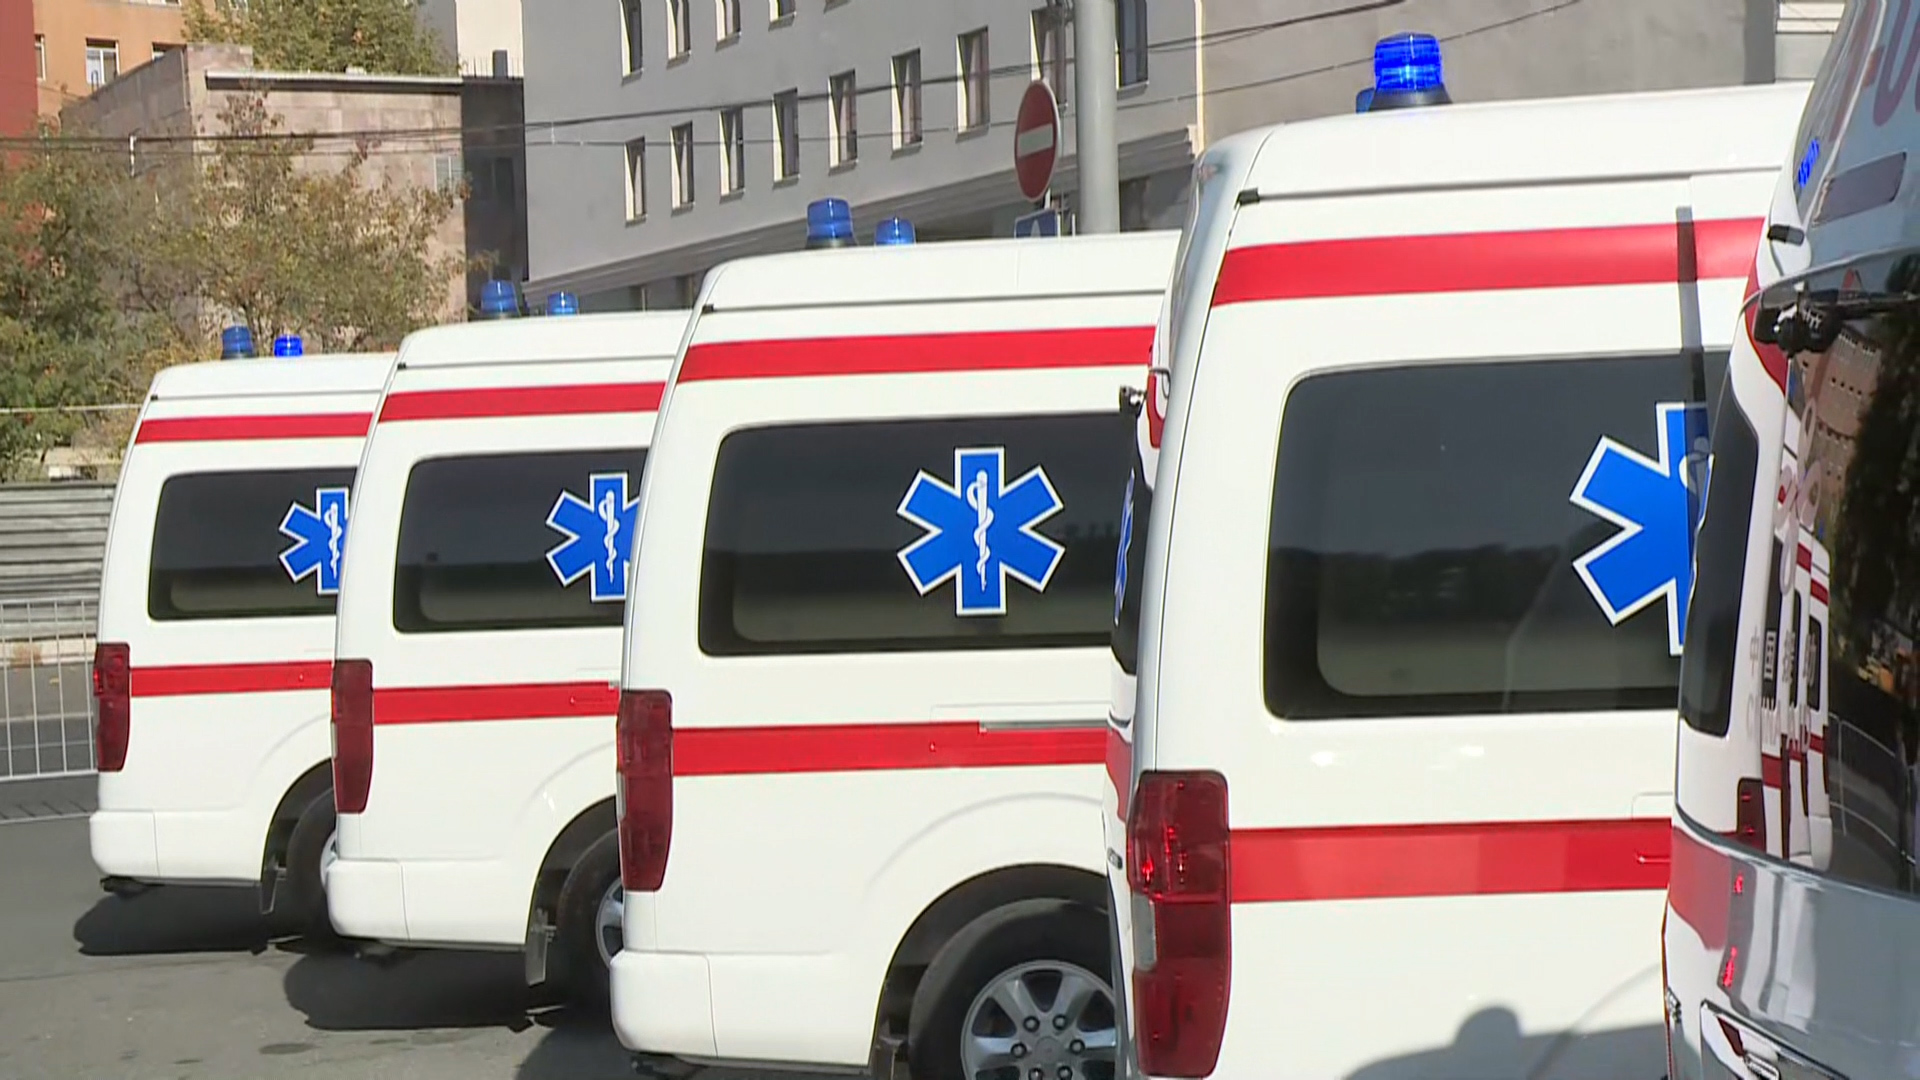 Բաղրամյան պողոտայում տեղի ունեցած իրադարձությունների հետևանքով բուժօգնության է դիմել 55 քաղաքացիական անձ և ոստիկան